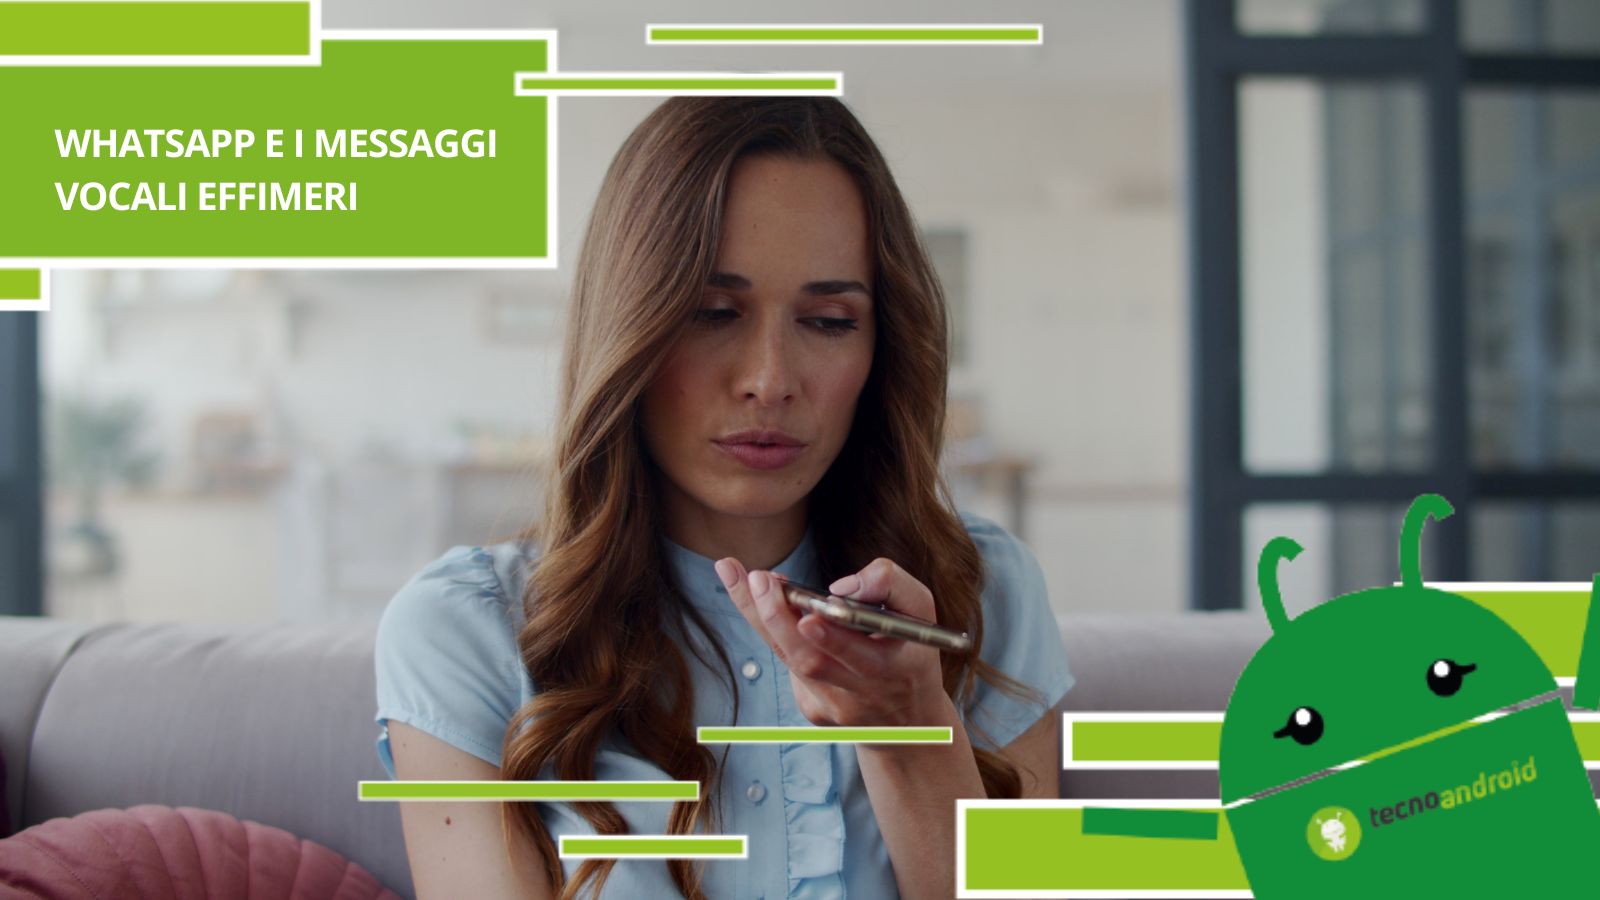 Whatsapp, finalmente potremo mandare dei messaggi vocali compromettenti senza alcun rischio